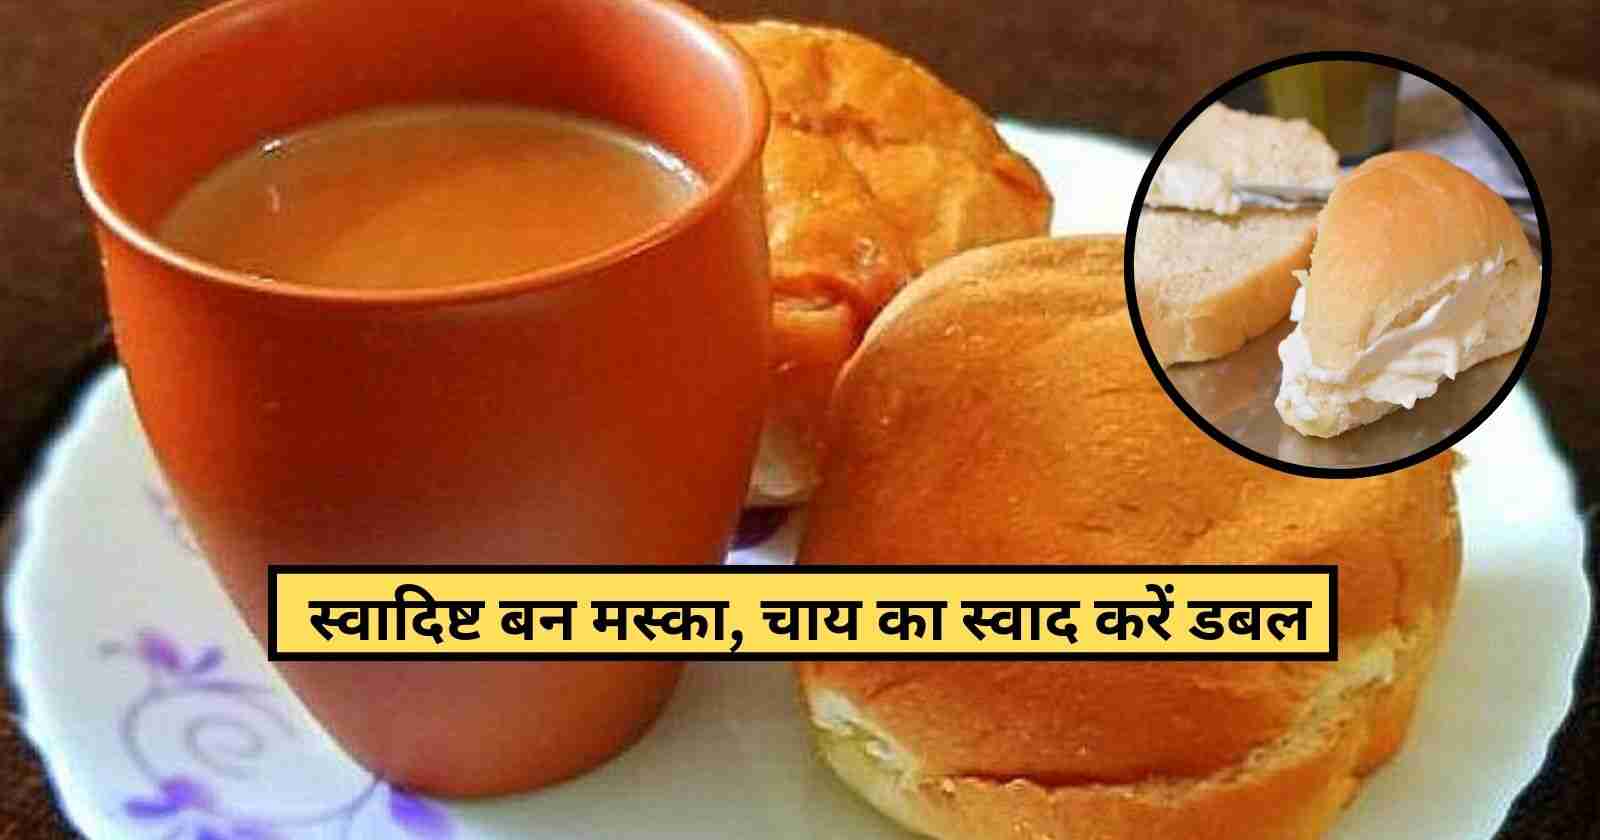 Bun Maska Recipe In Hindi: 2 मिनिट में बनाये यह स्वादिष्ट मस्का बन, खाते ही हो जायेंगे सभी एक दम खुश hinditonews.in